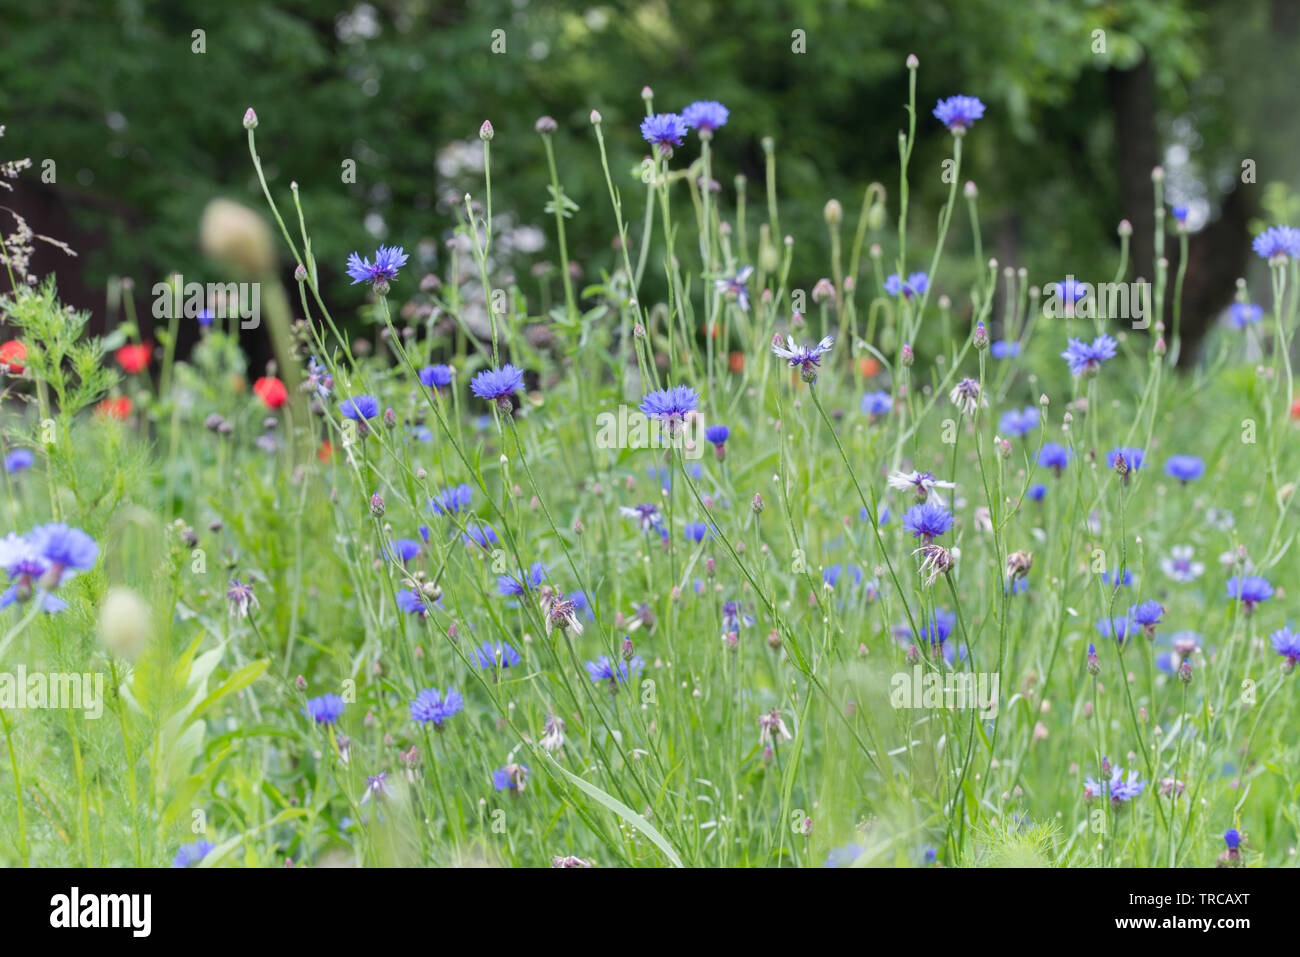 Centaurea cyanus, cornflower, bachelor's button blue flowers in meadow Stock Photo